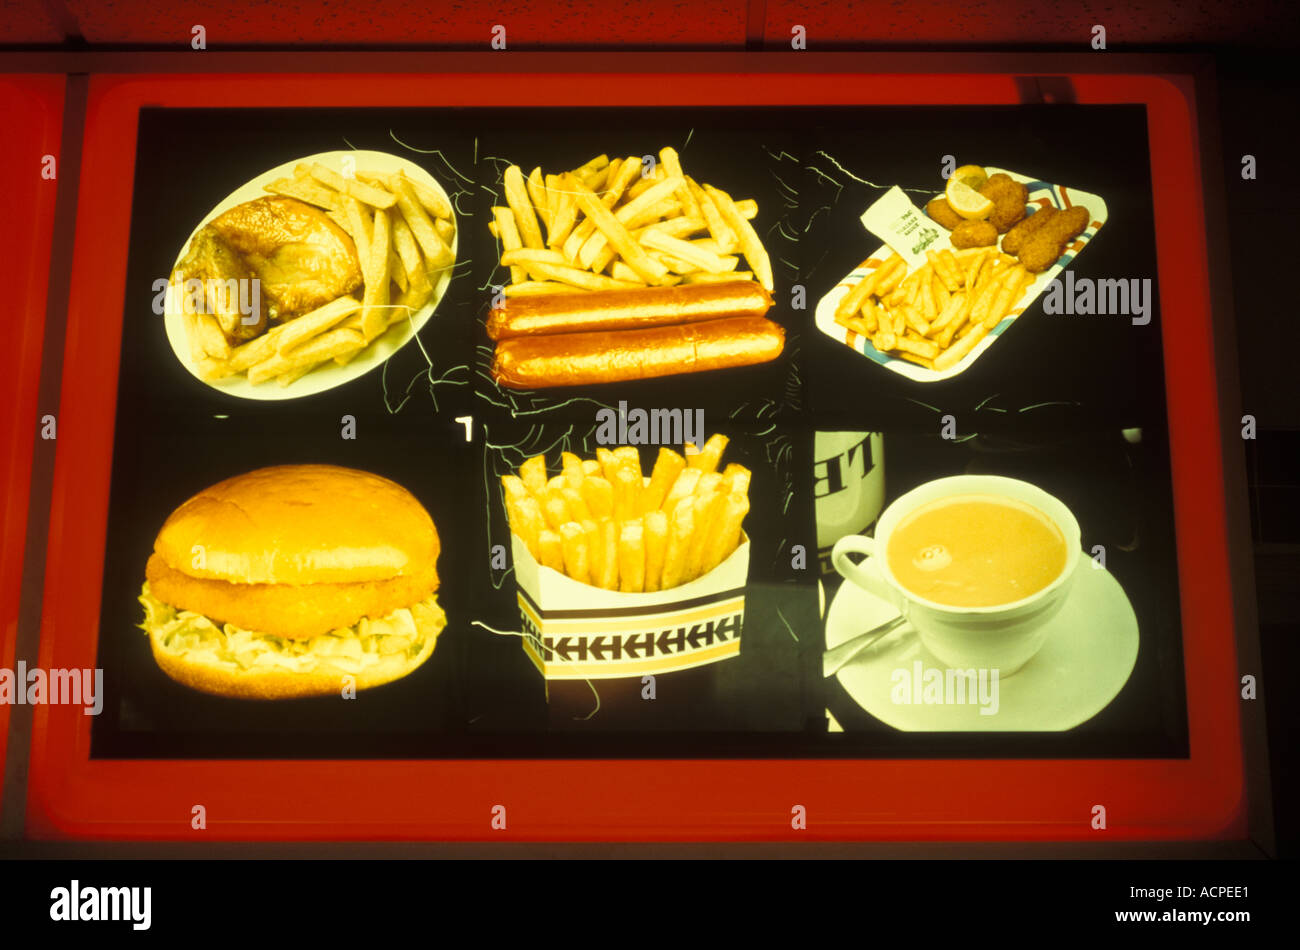 Publicidad de comida fotografías e imágenes de alta resolución - Alamy